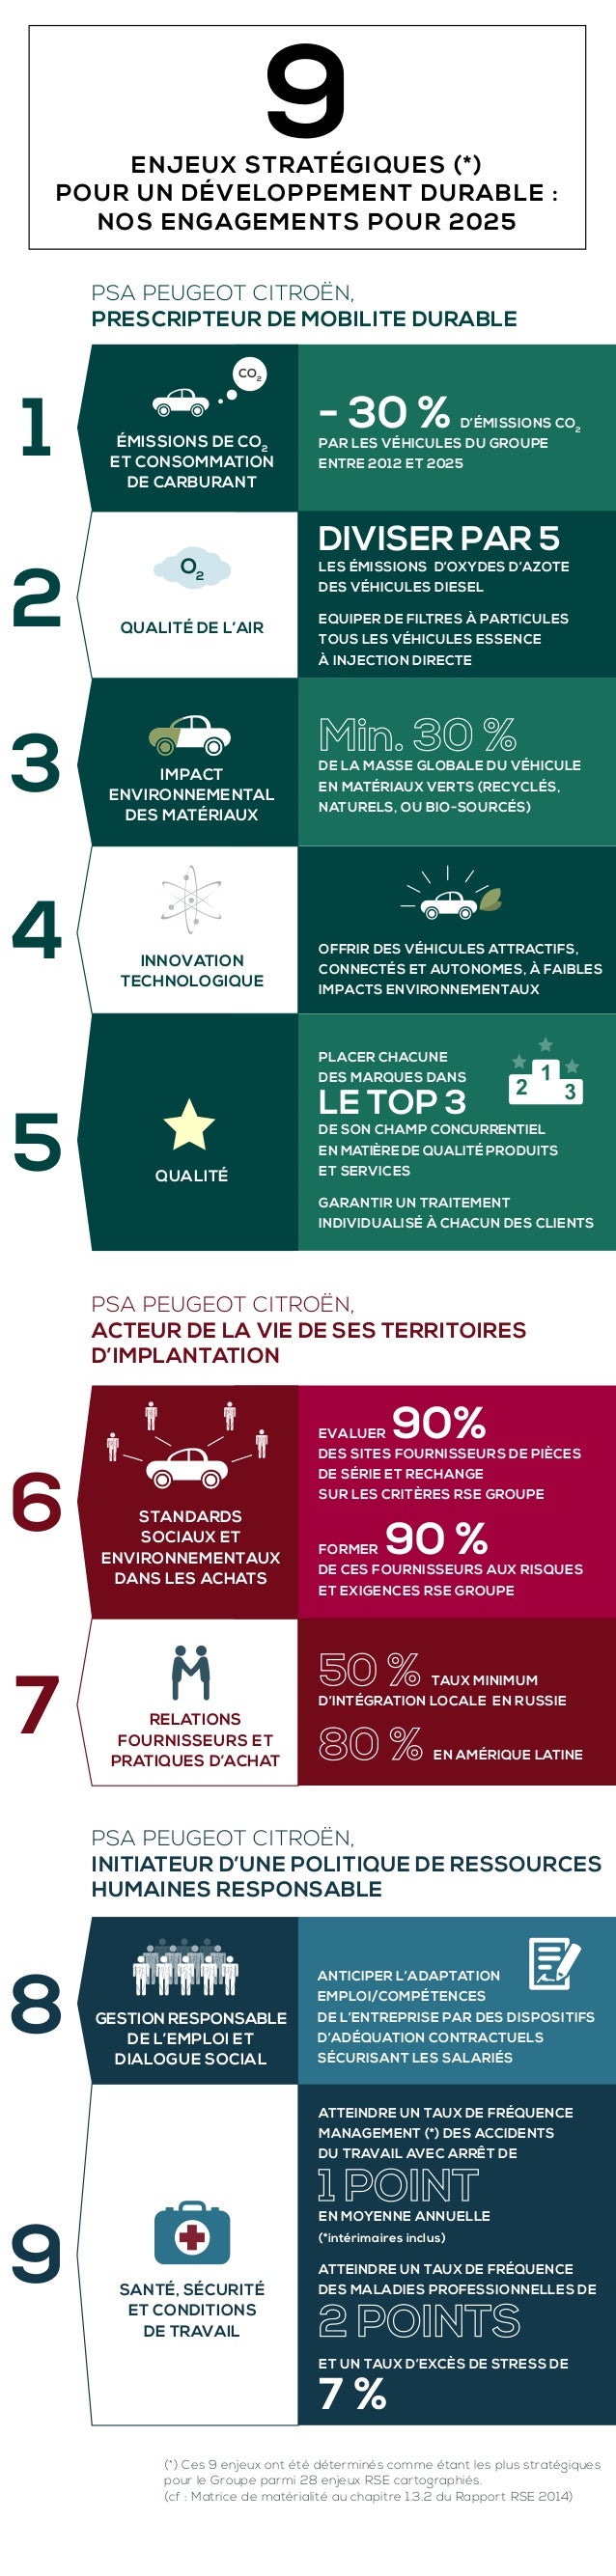 [DISCUSSION] Les futures Citroën - Page 32 9-enjeux-stratgiques-pour-un-dveloppement-durable-chez-psa-peugeot-citron-1-638